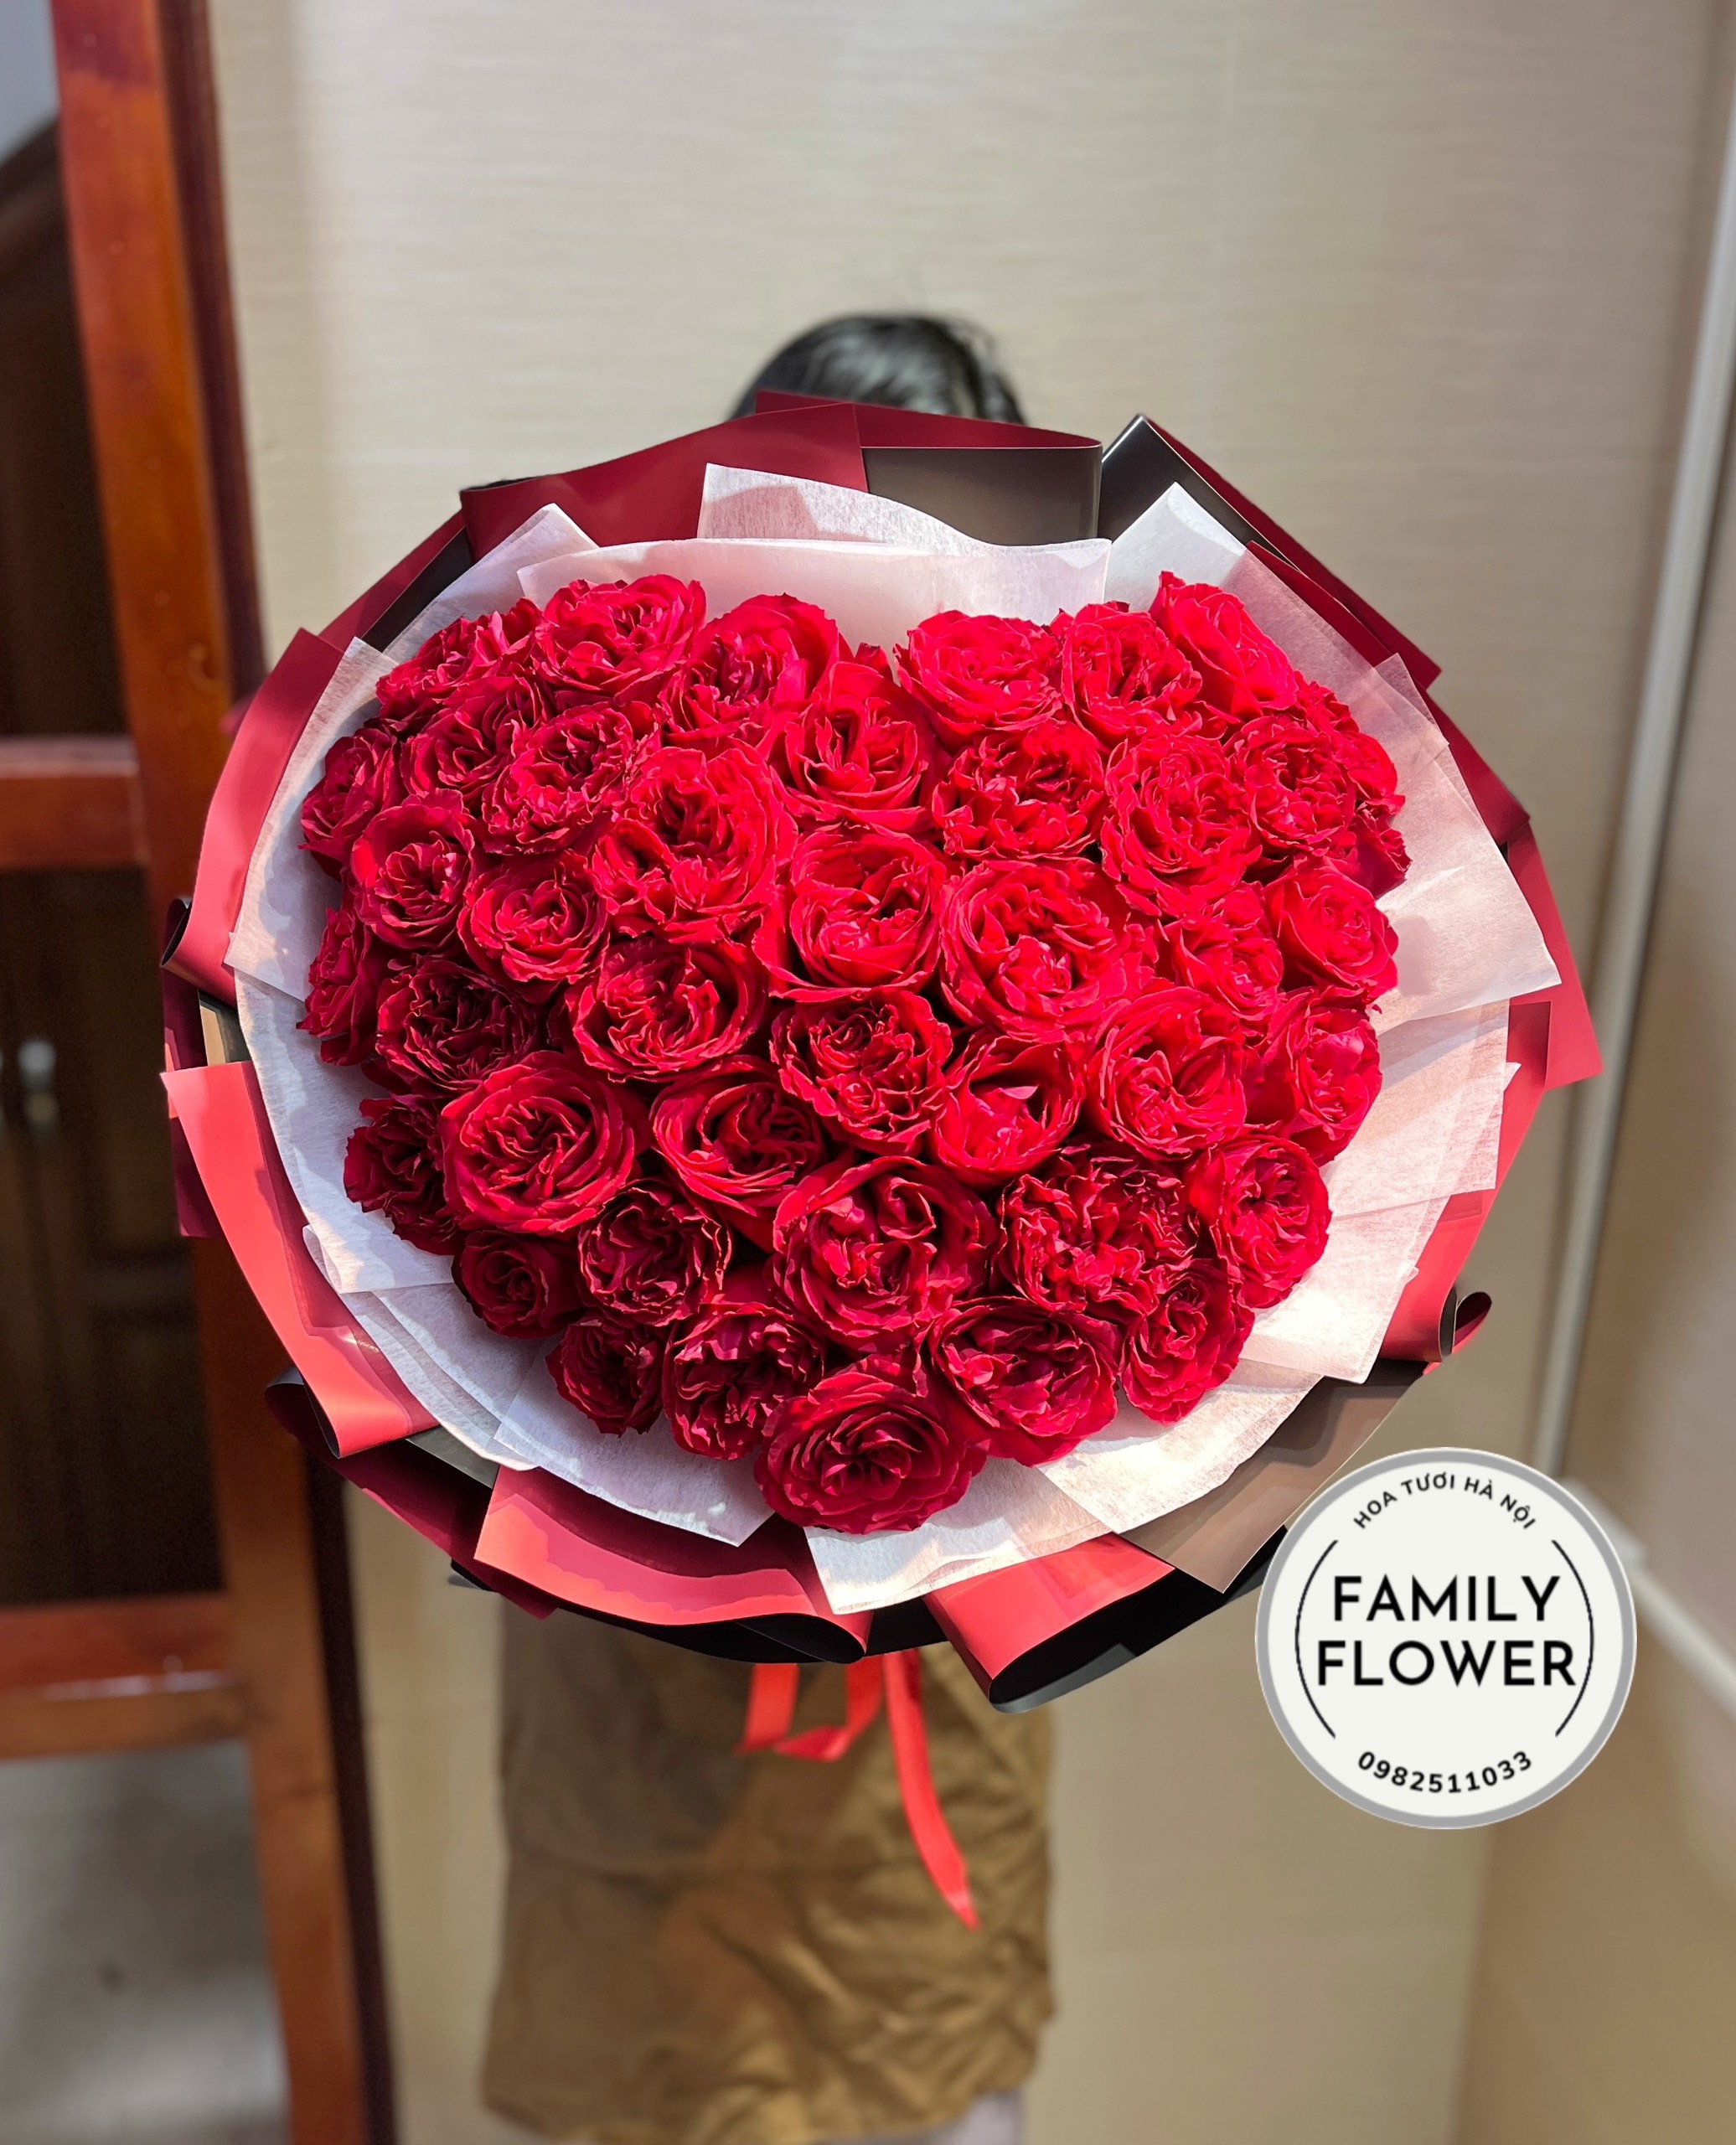 Hoa 8 tháng 3 Hà Nội ! Bó hoa trái tim tặng vợ nhân dịp valentine , 8/3 quận Ba Đình Hà Nội